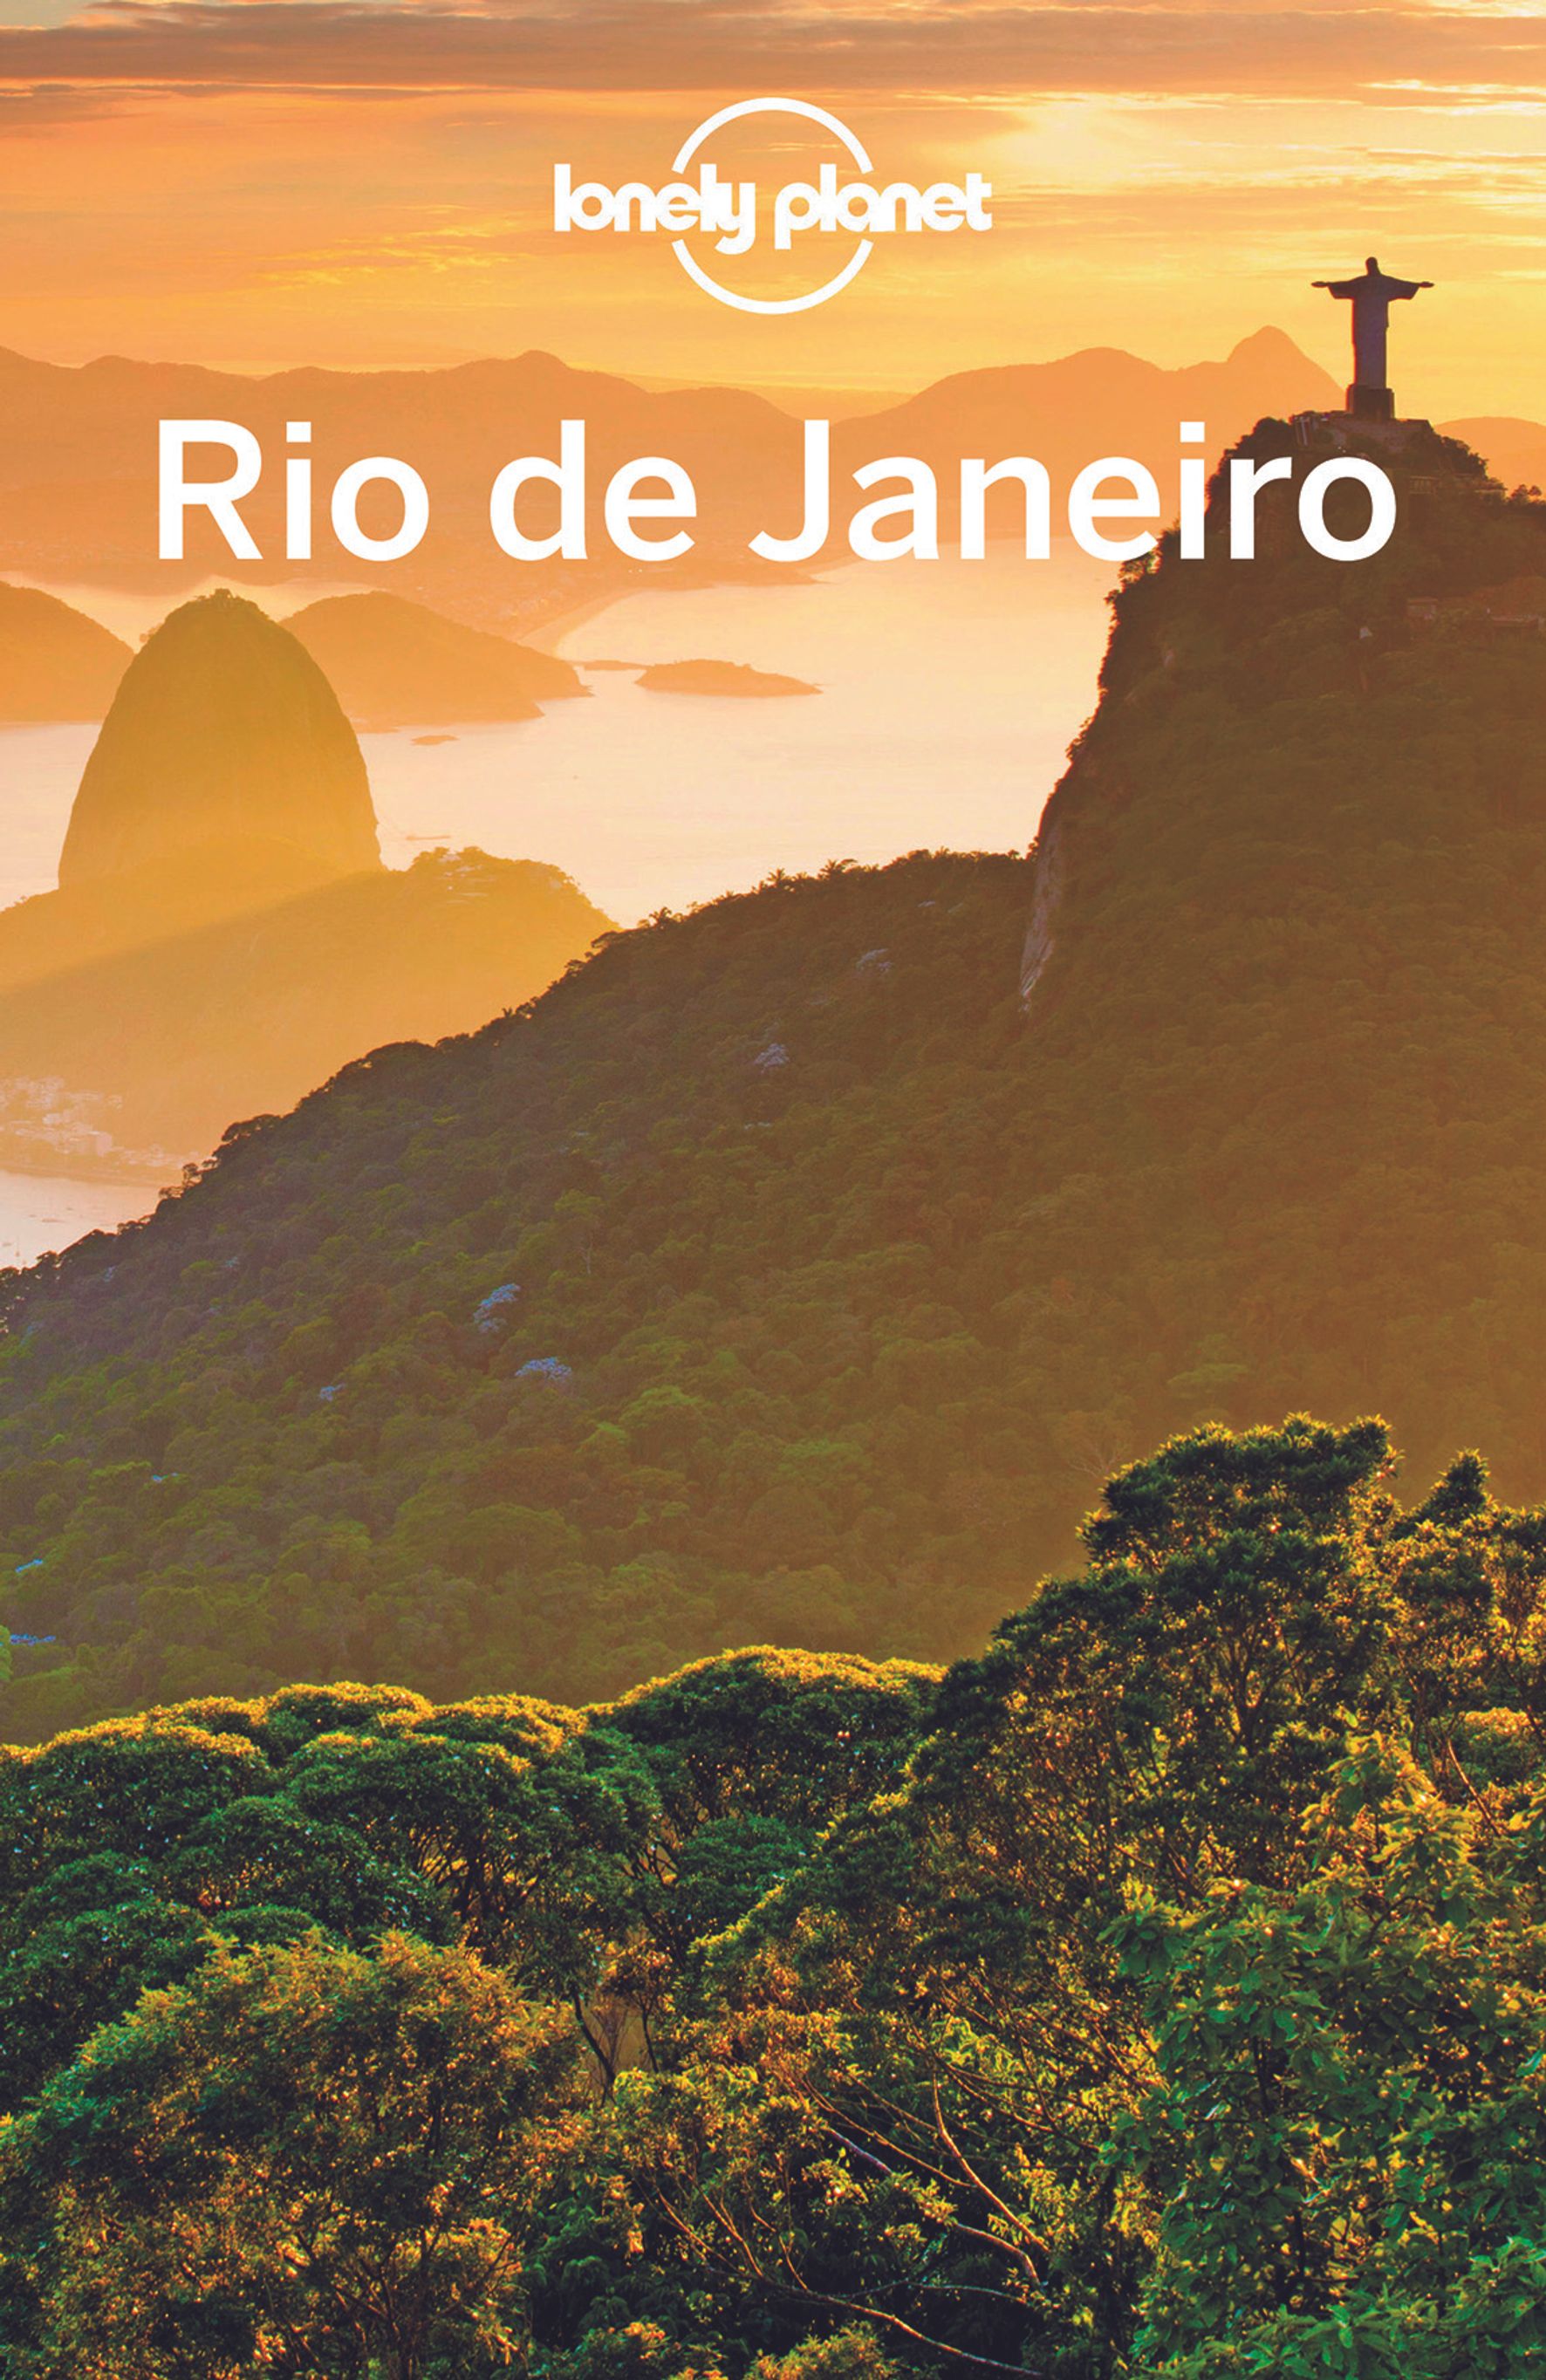 Lonely Planet Rio de Janeiro (eBook)